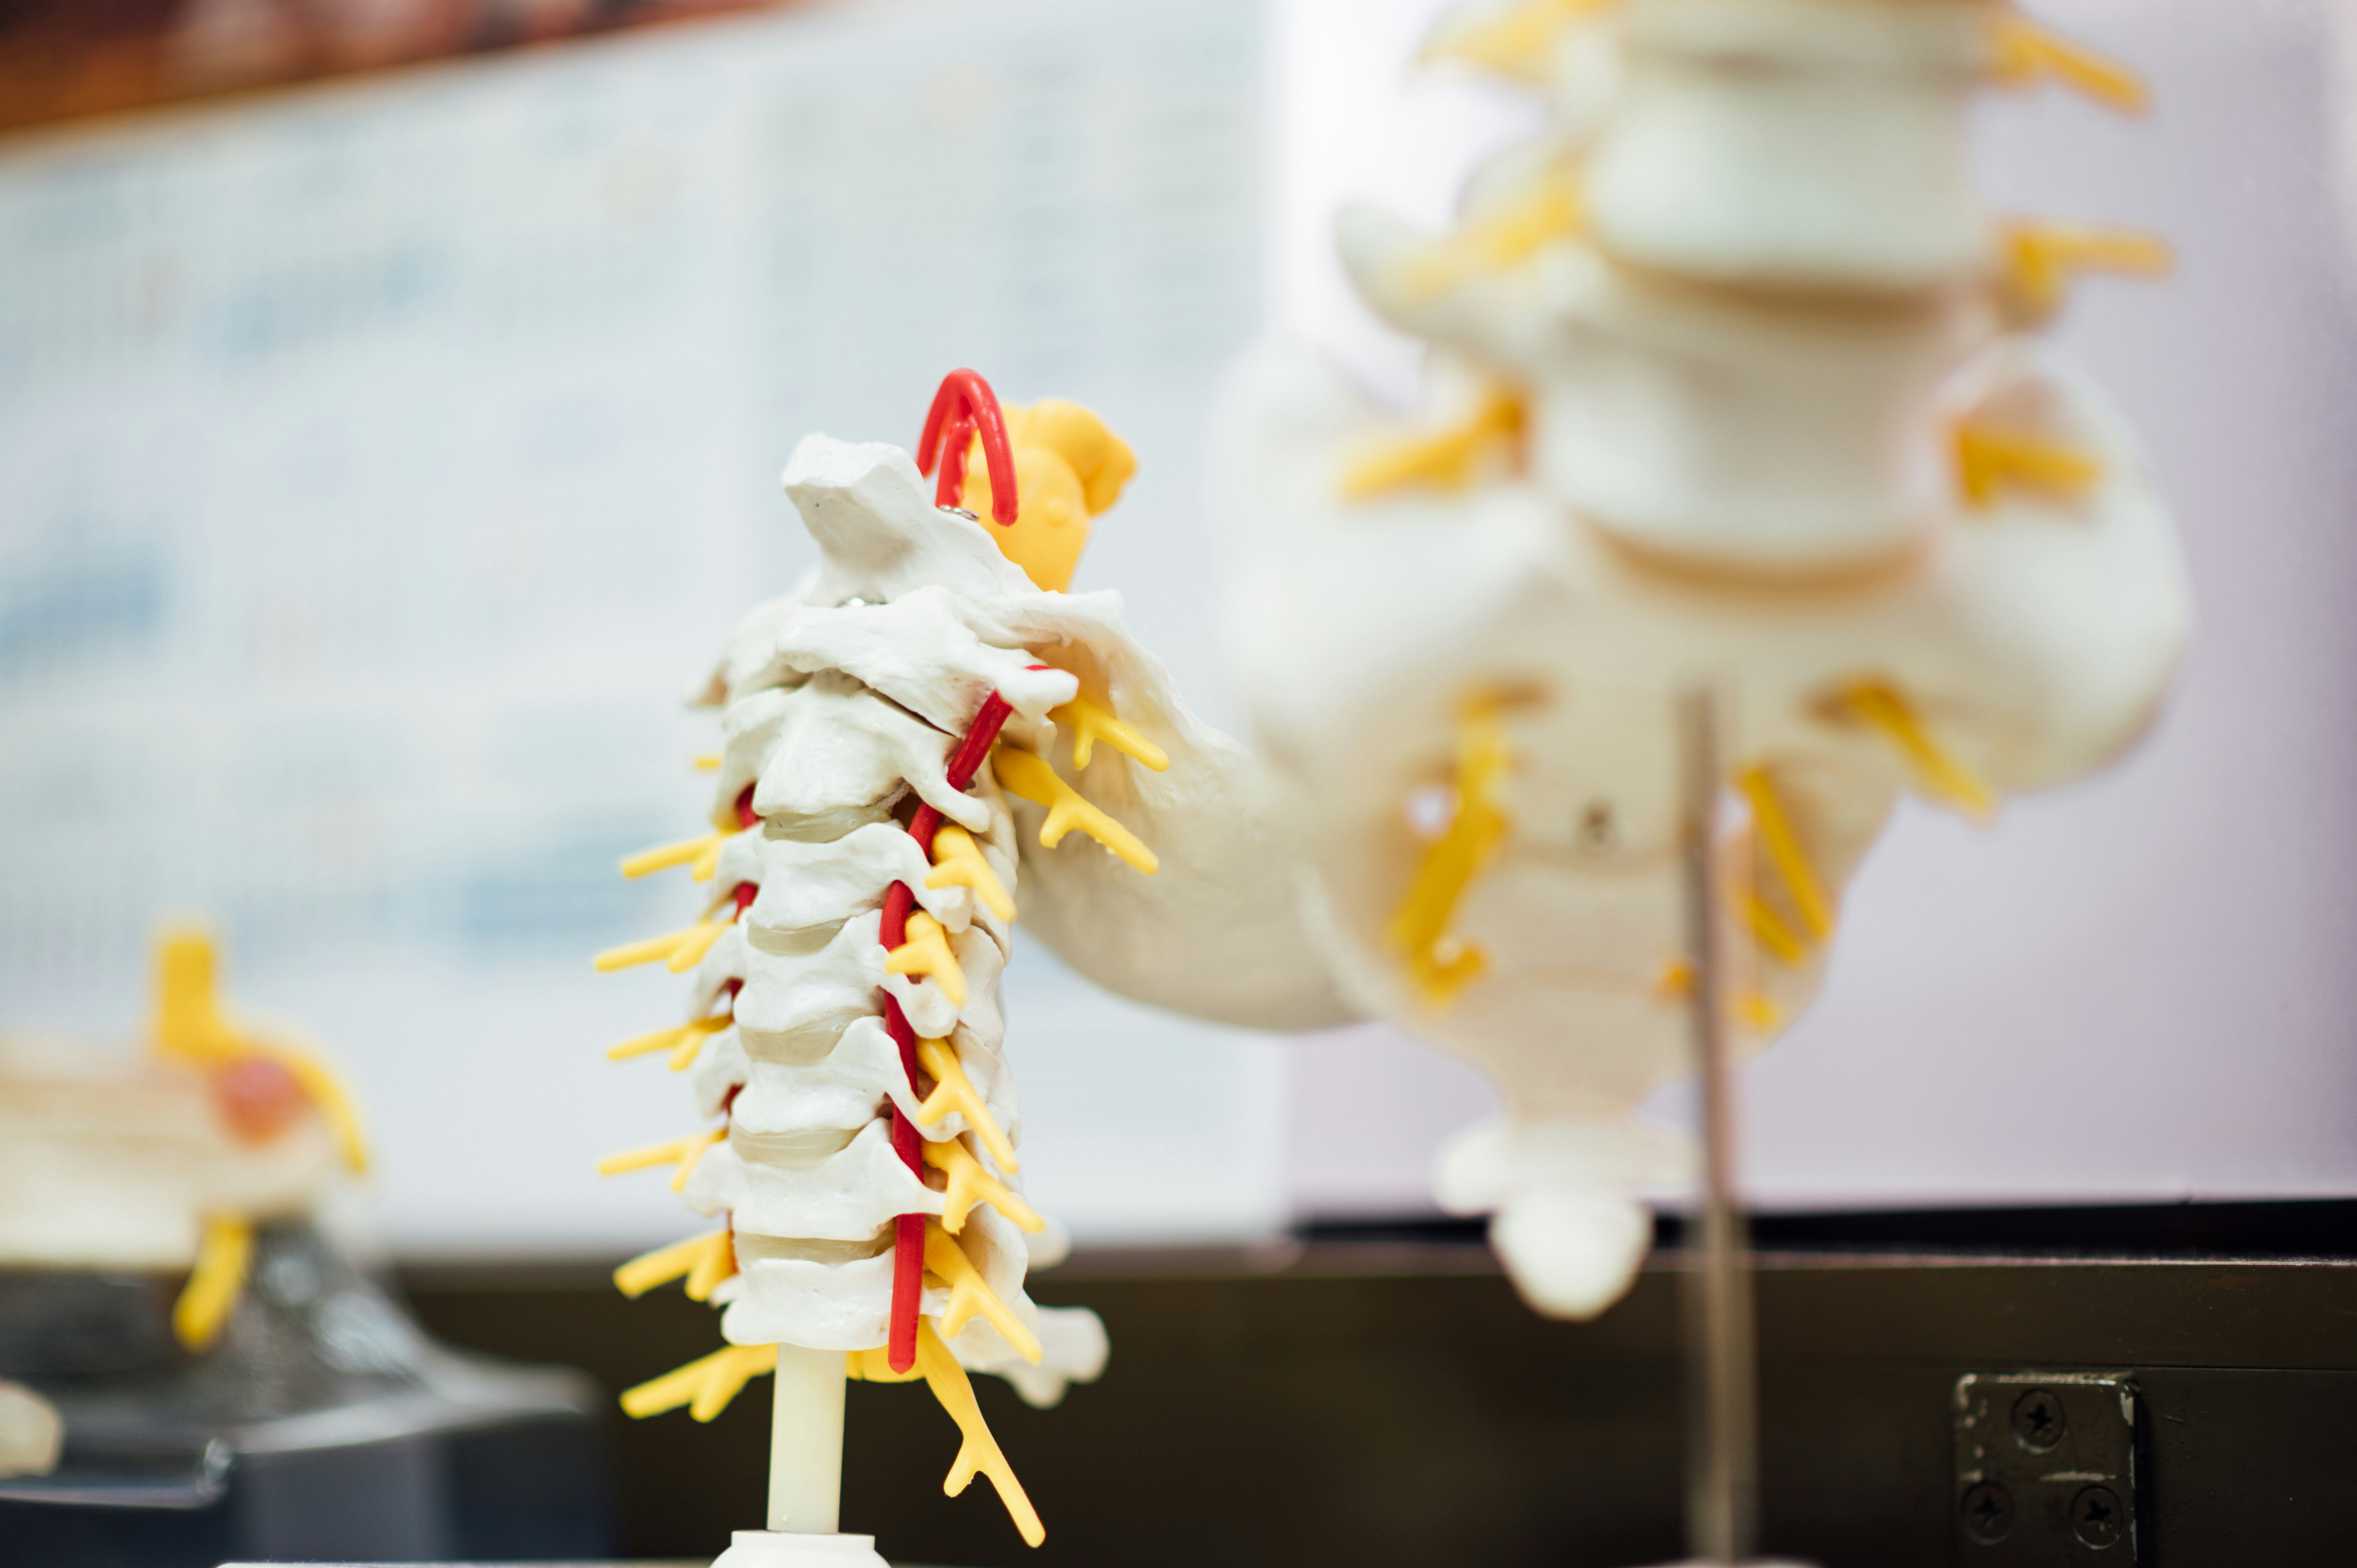 Understanding Wedge Fractures in the Spine